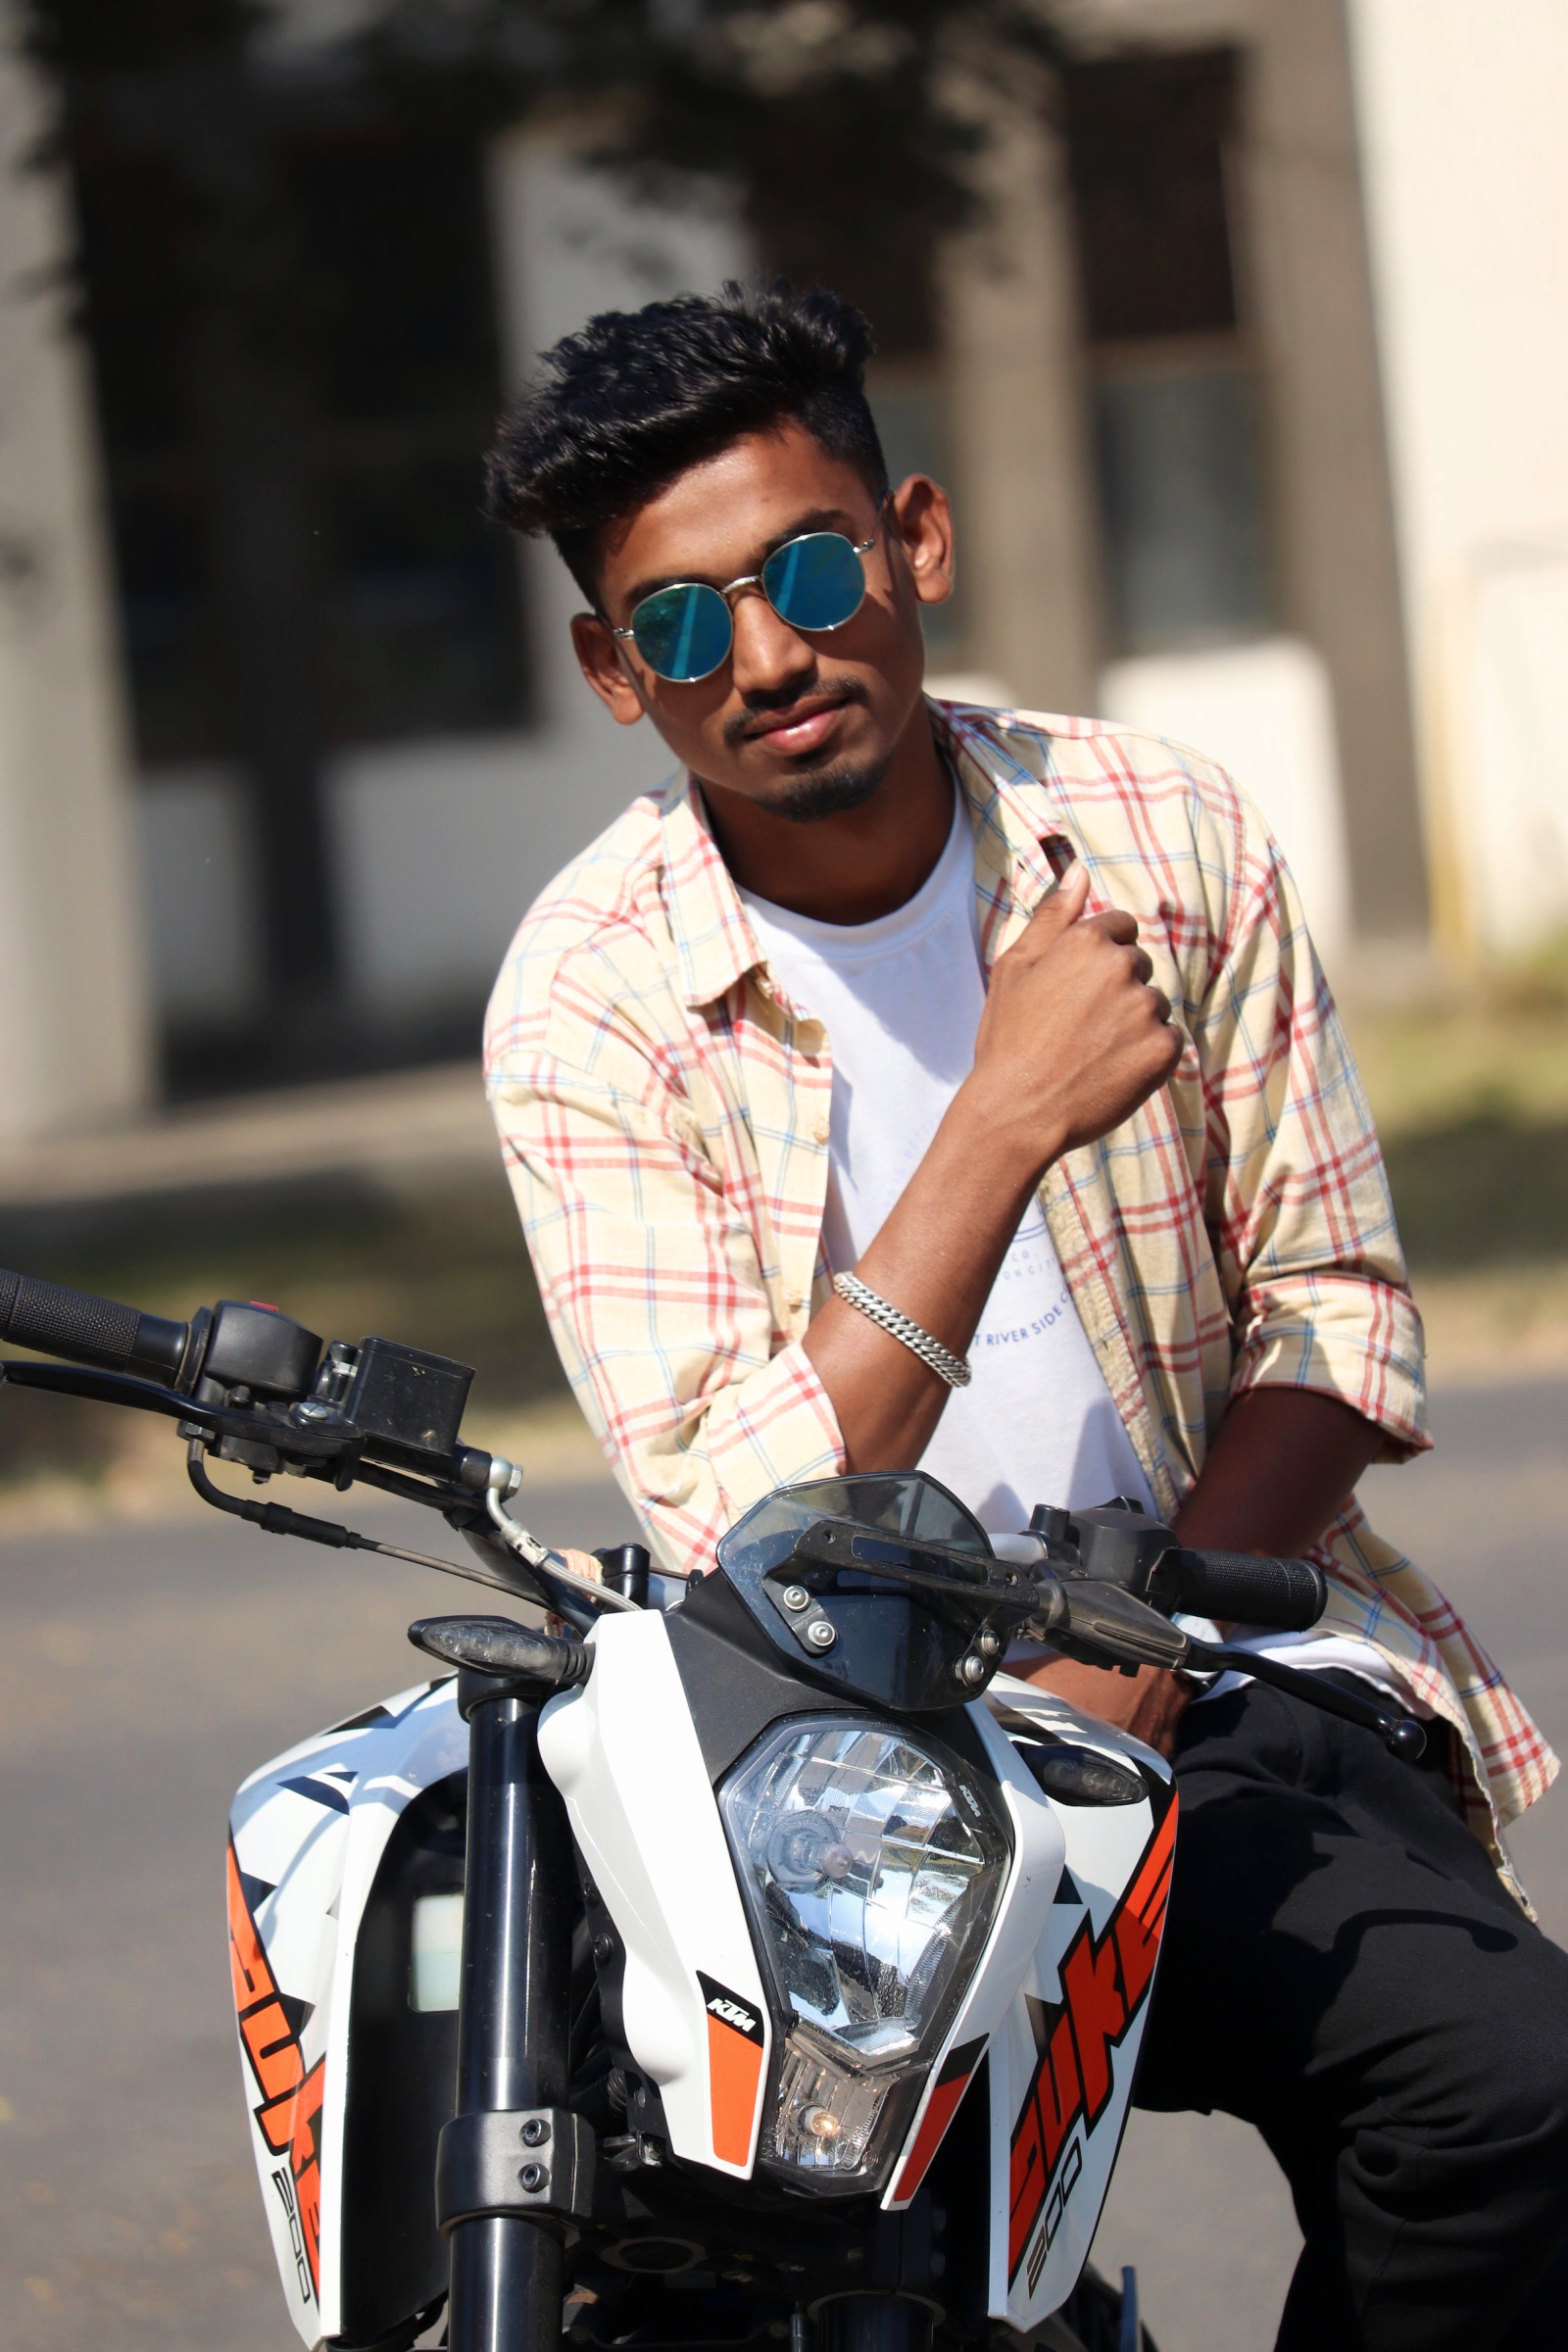 A male model on a bike